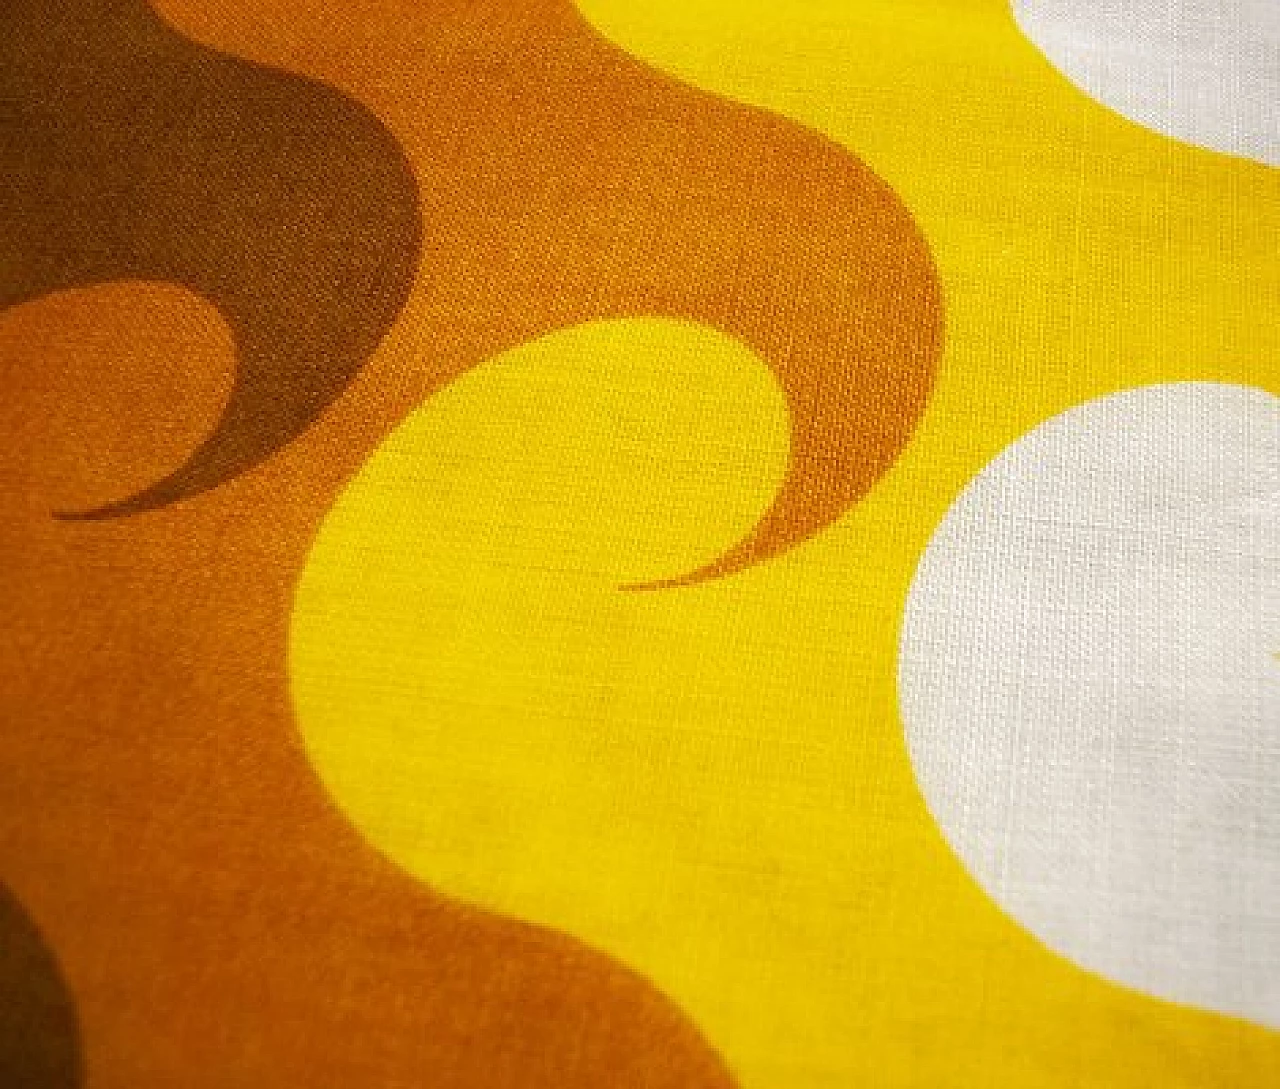 Tessuto giallo e arancione in cotone di Col Nova Diolen Ultra, anni '70 1